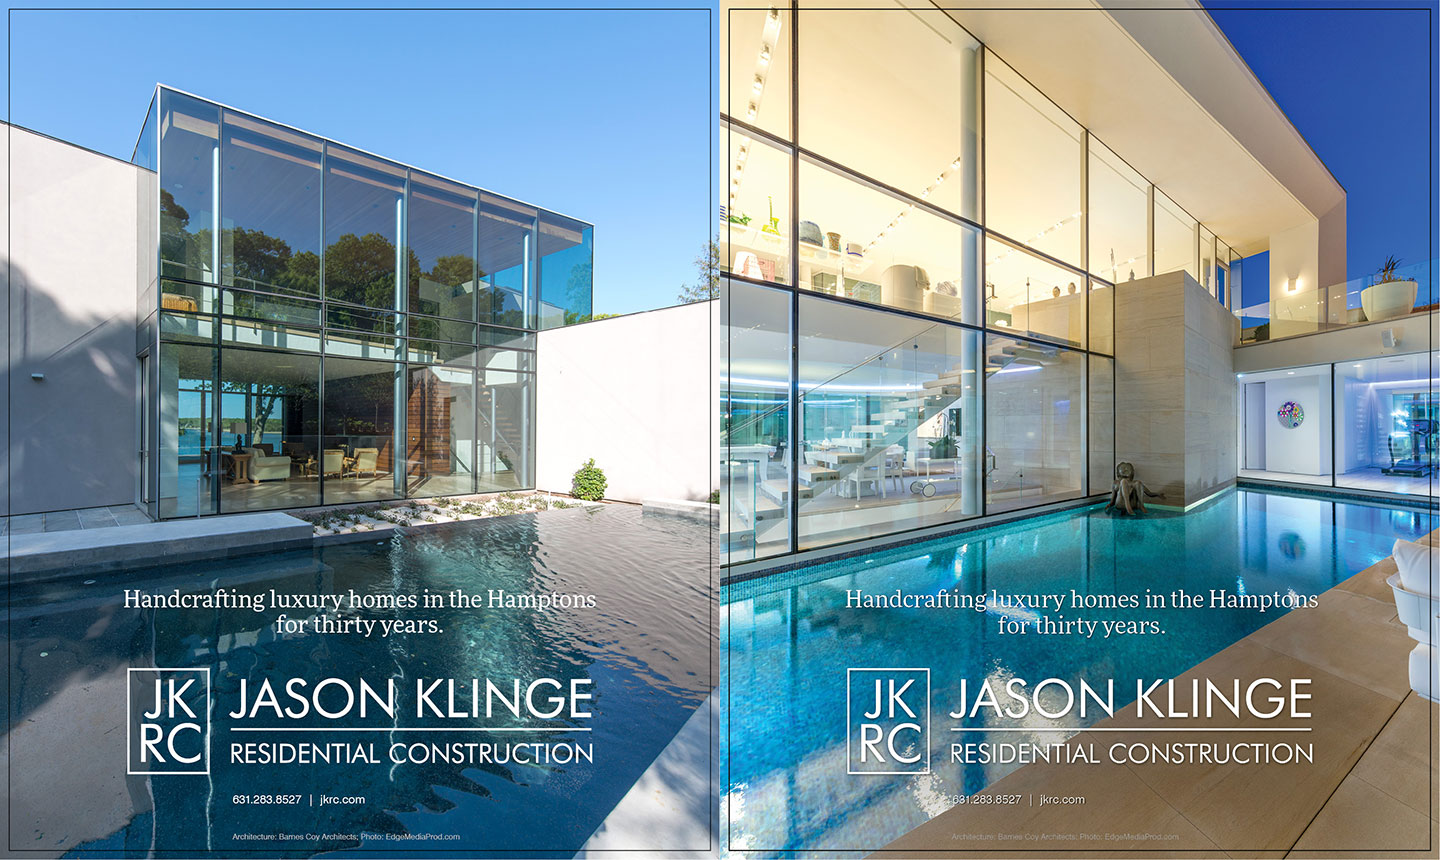 Jason Klinge Residential Construction